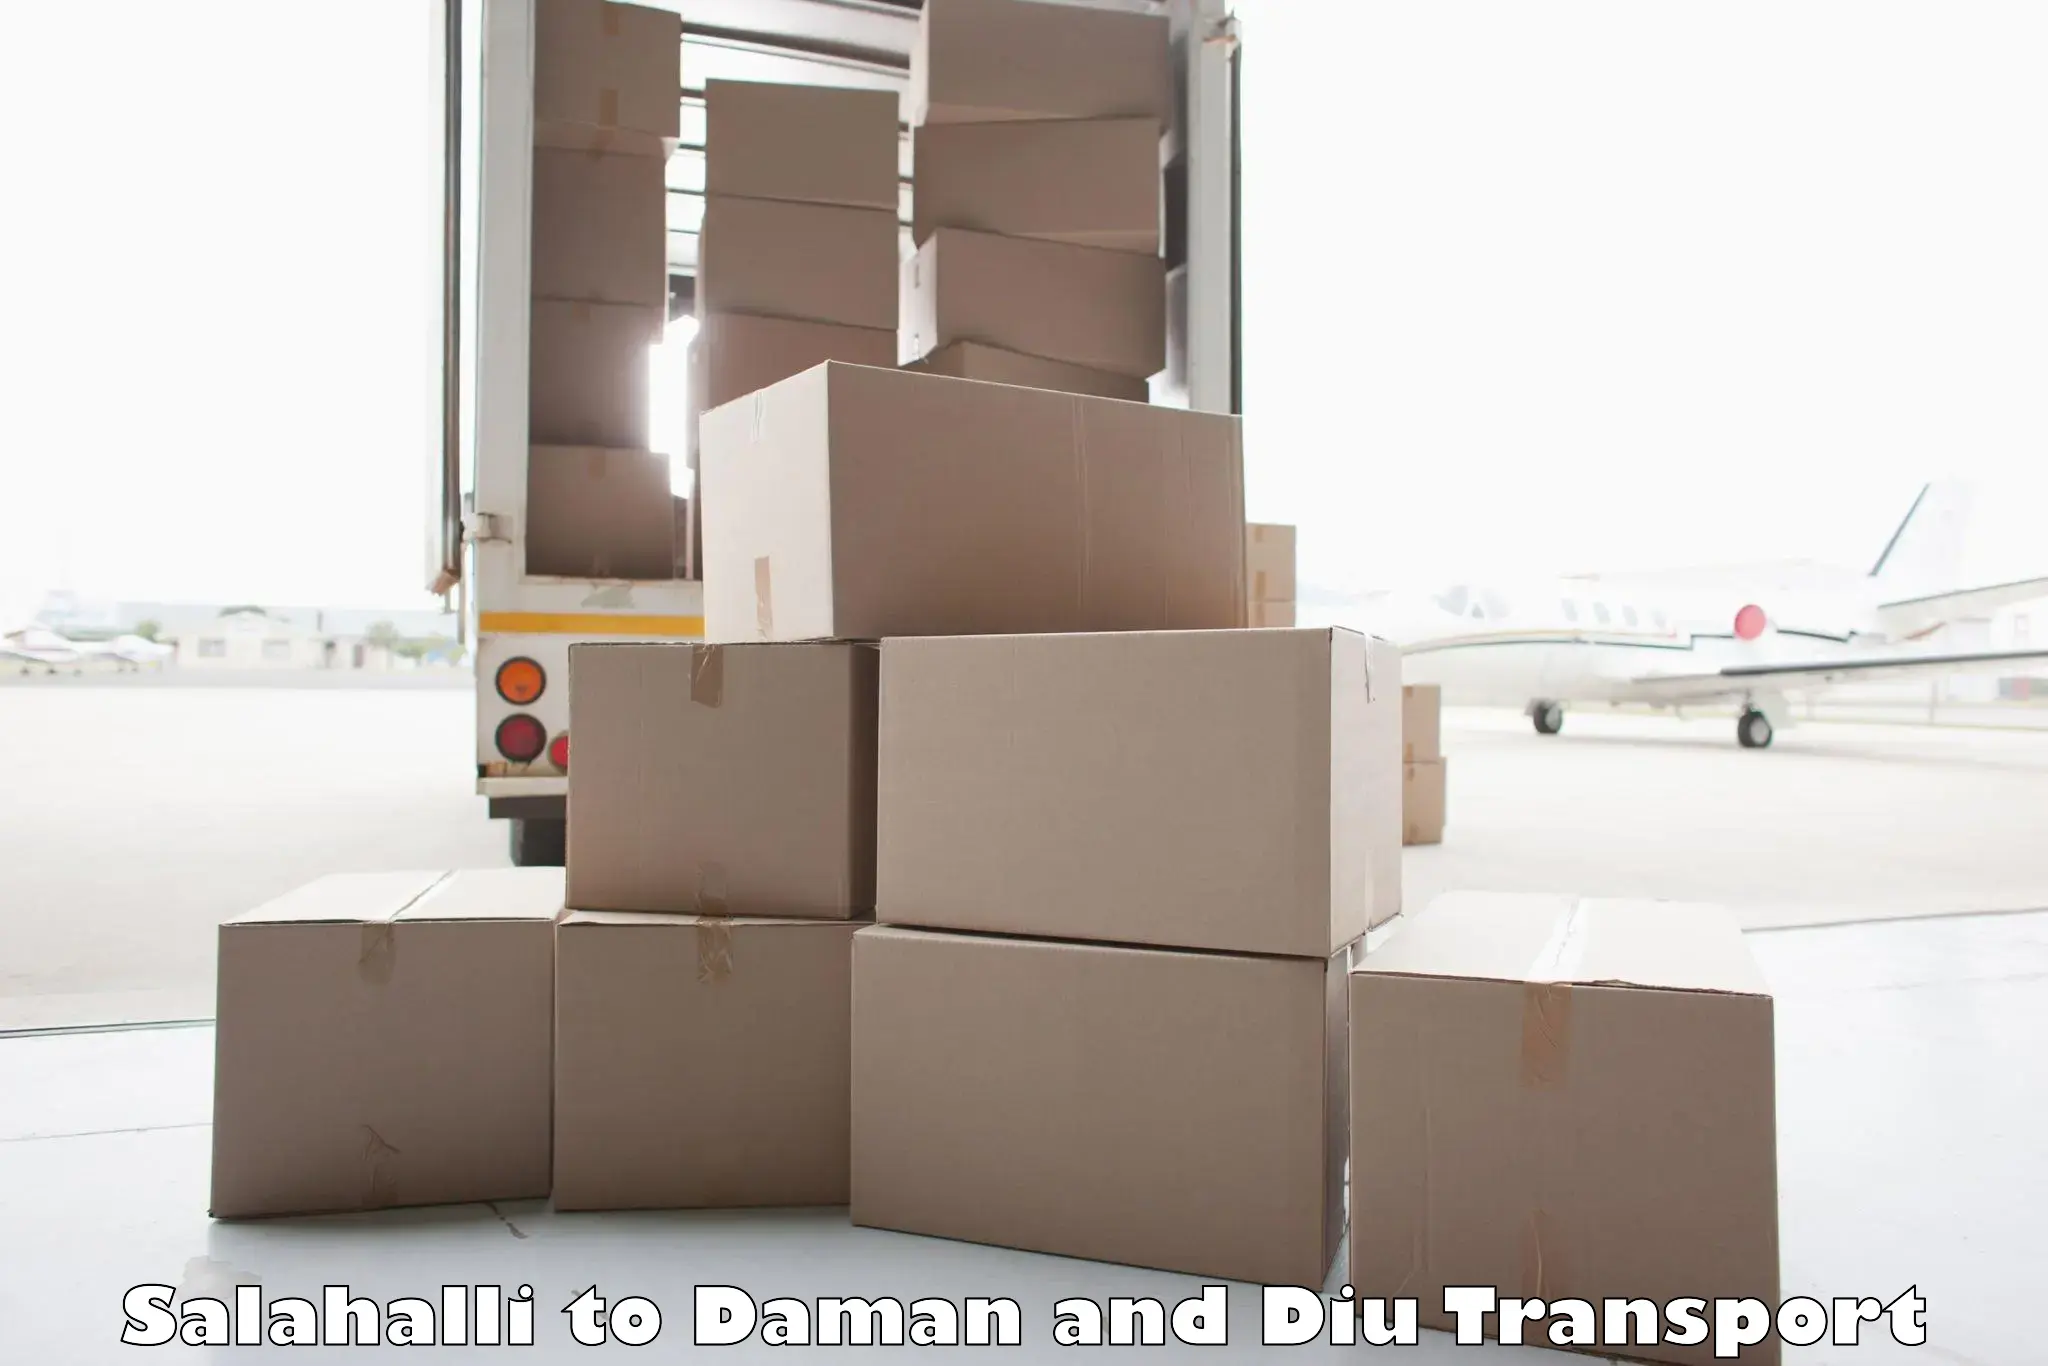 Land transport services Salahalli to Daman and Diu